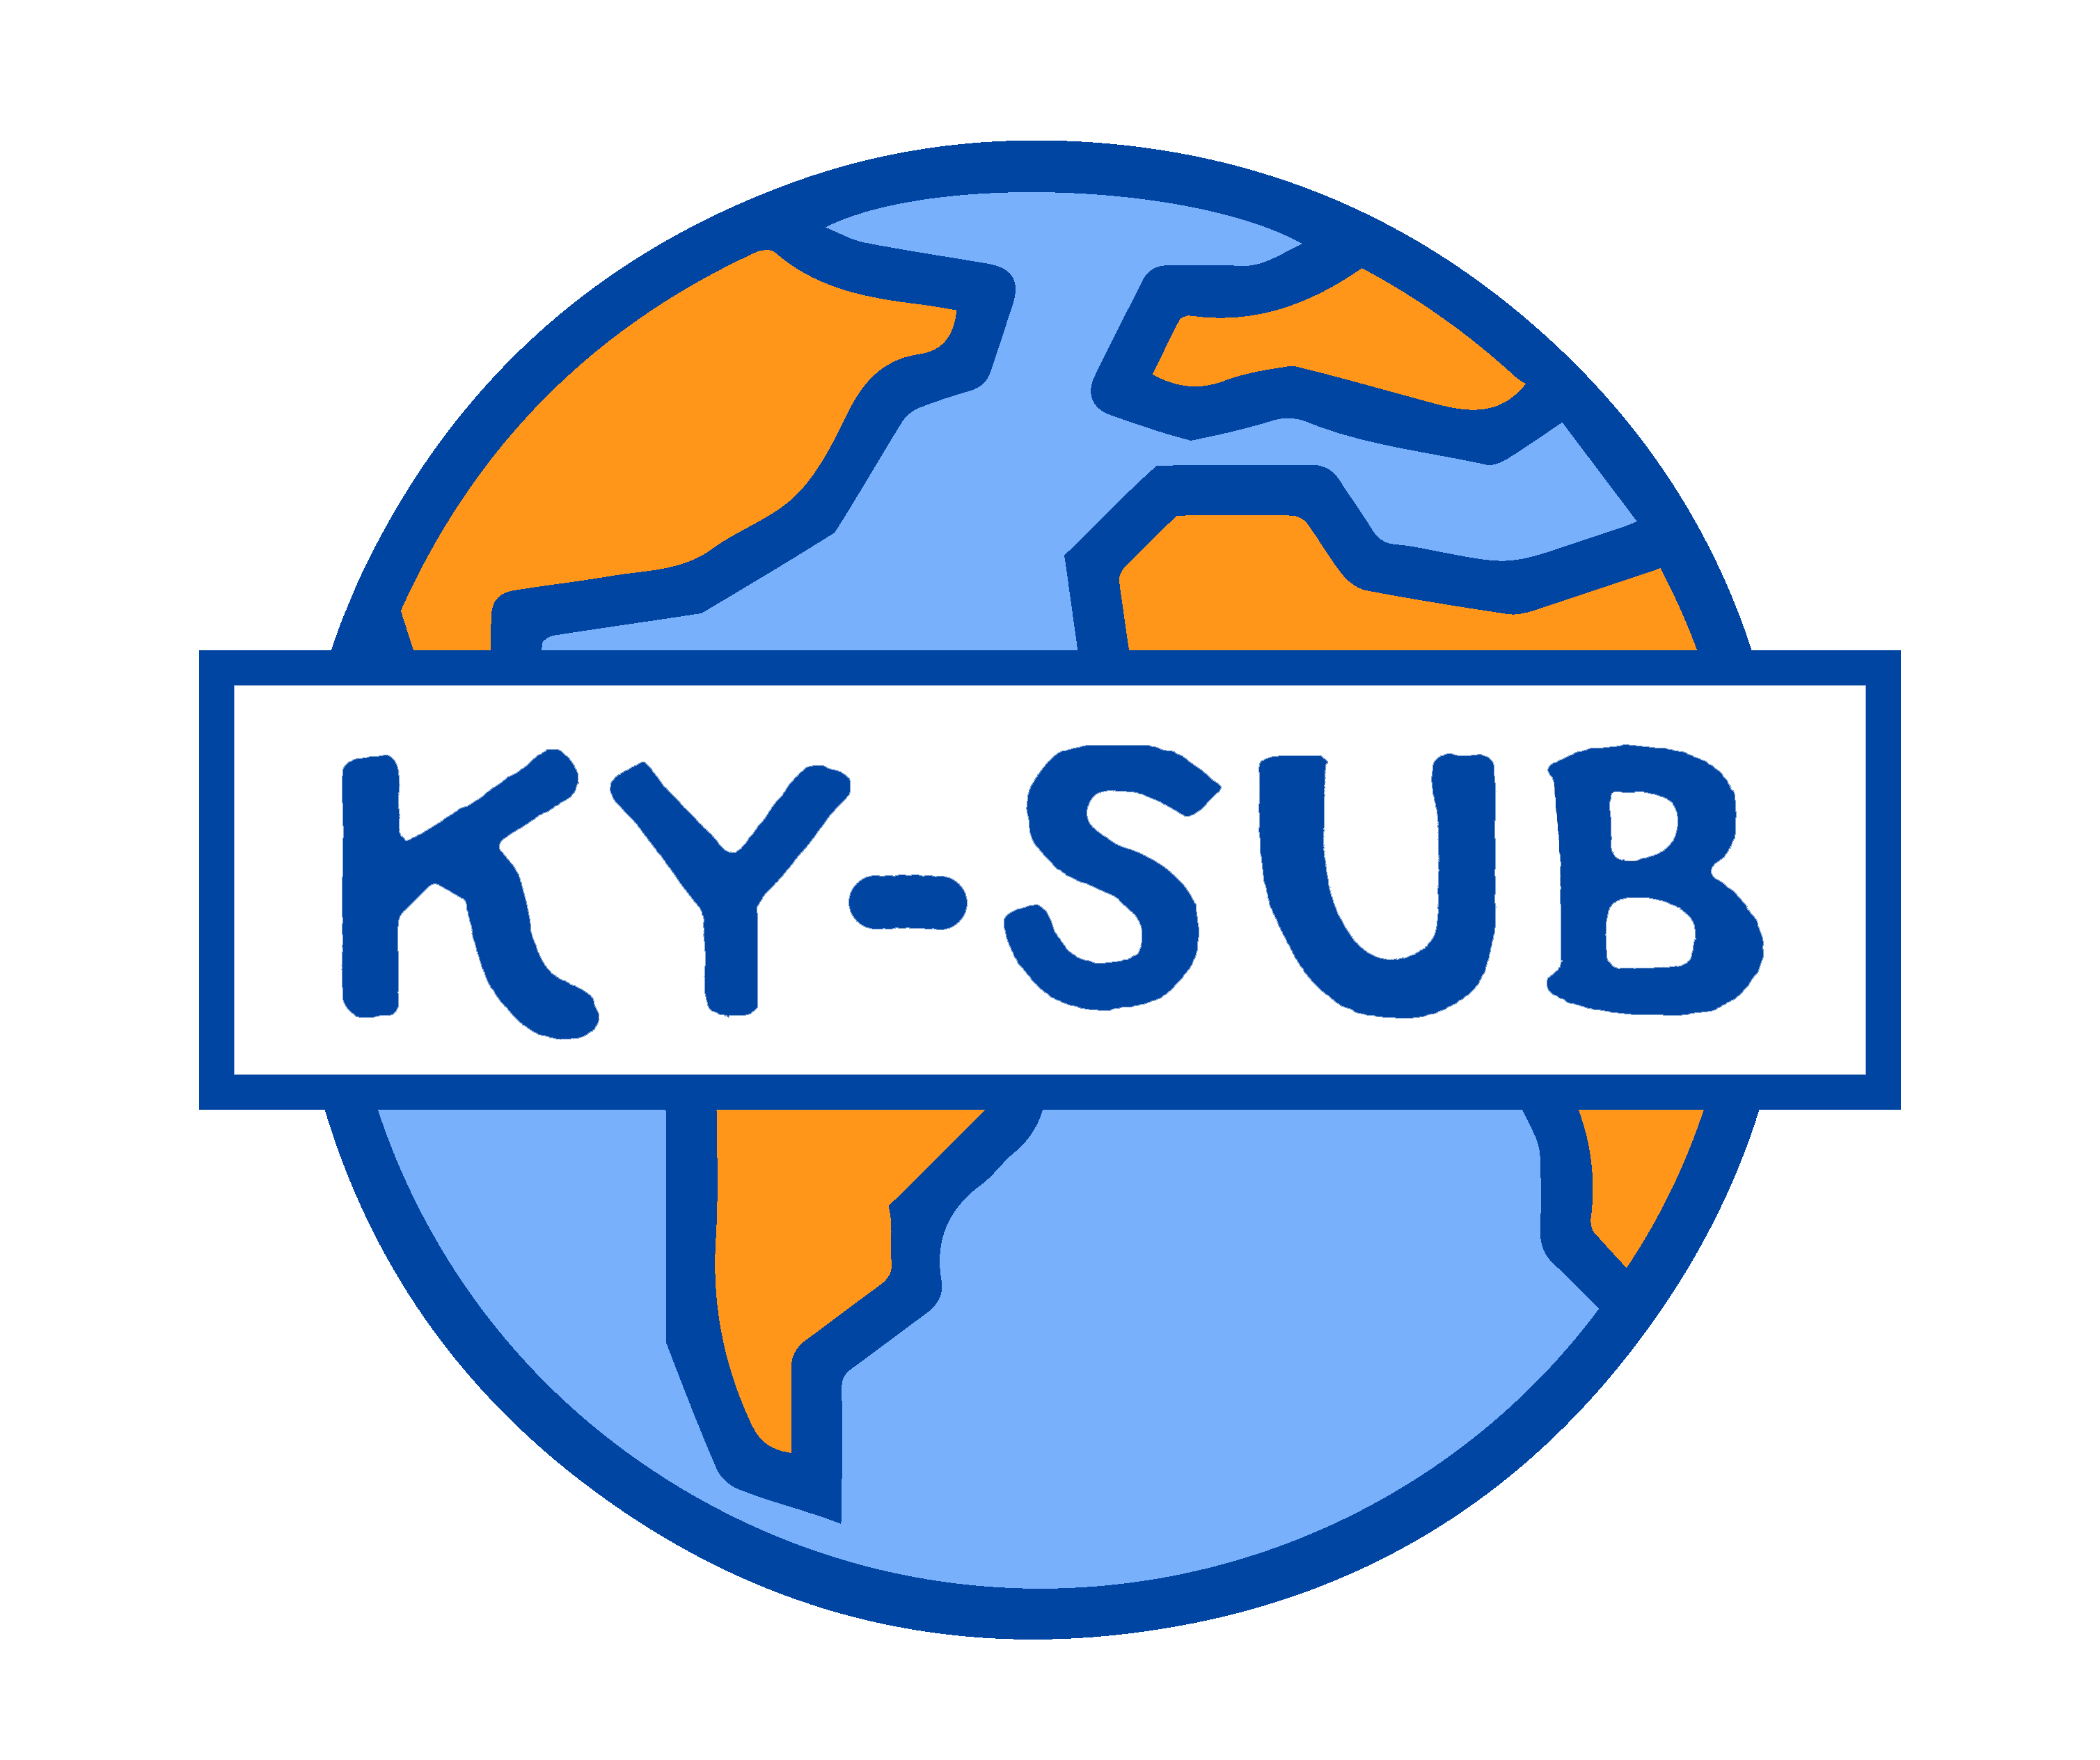 KY-SUB